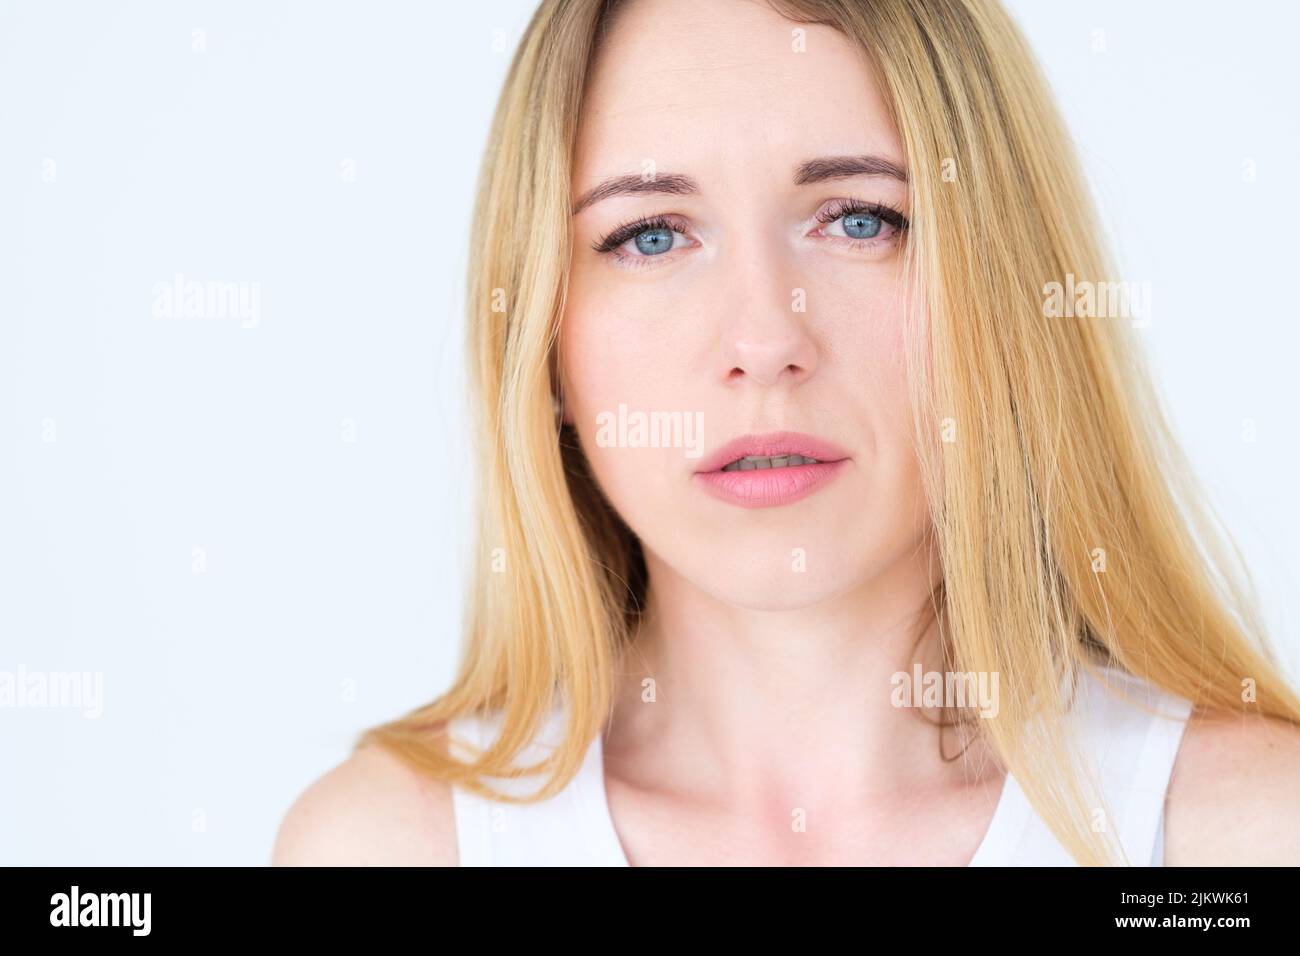 emotion face moody grumpy sullen bouleversé femme Banque D'Images